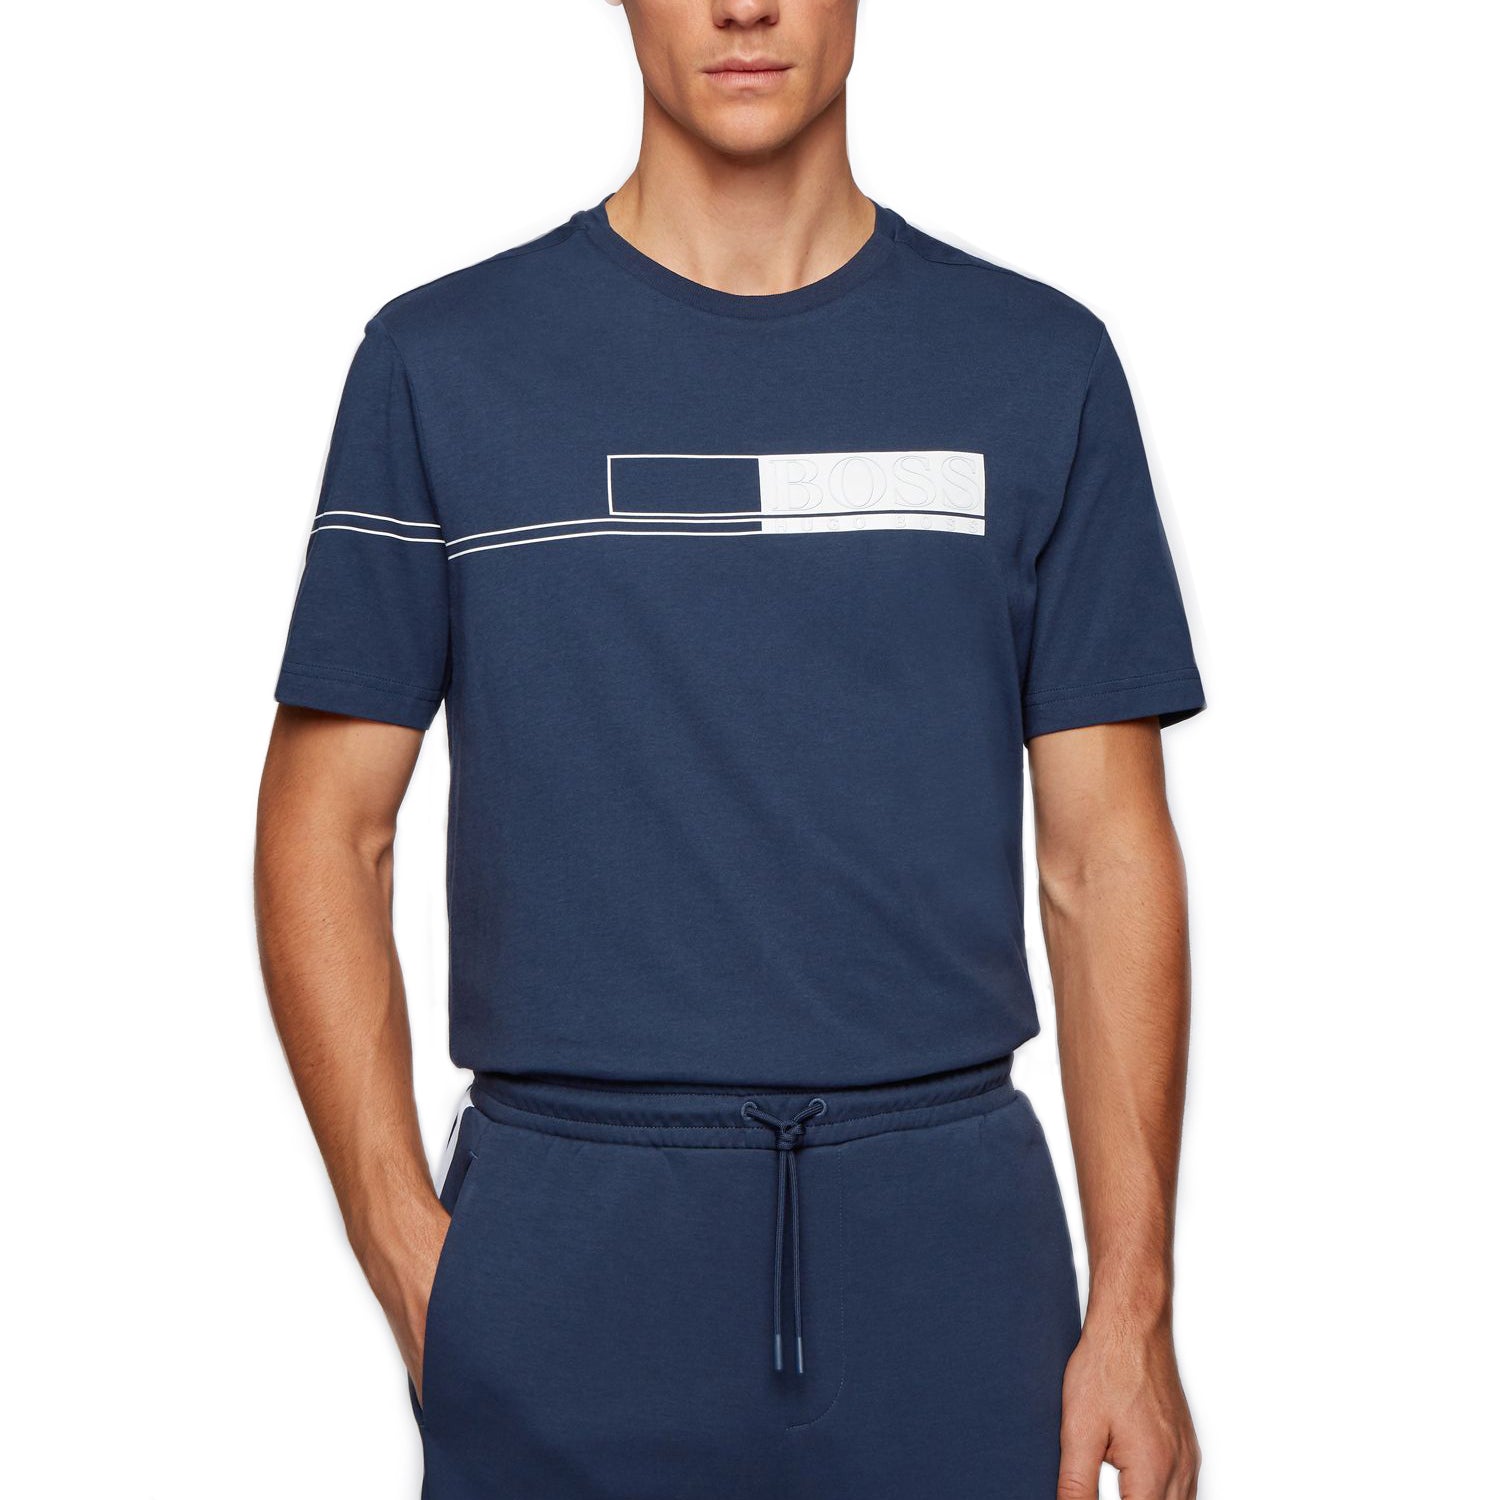 Hugo Boss Tee 1 Golf T-Shirt 2021